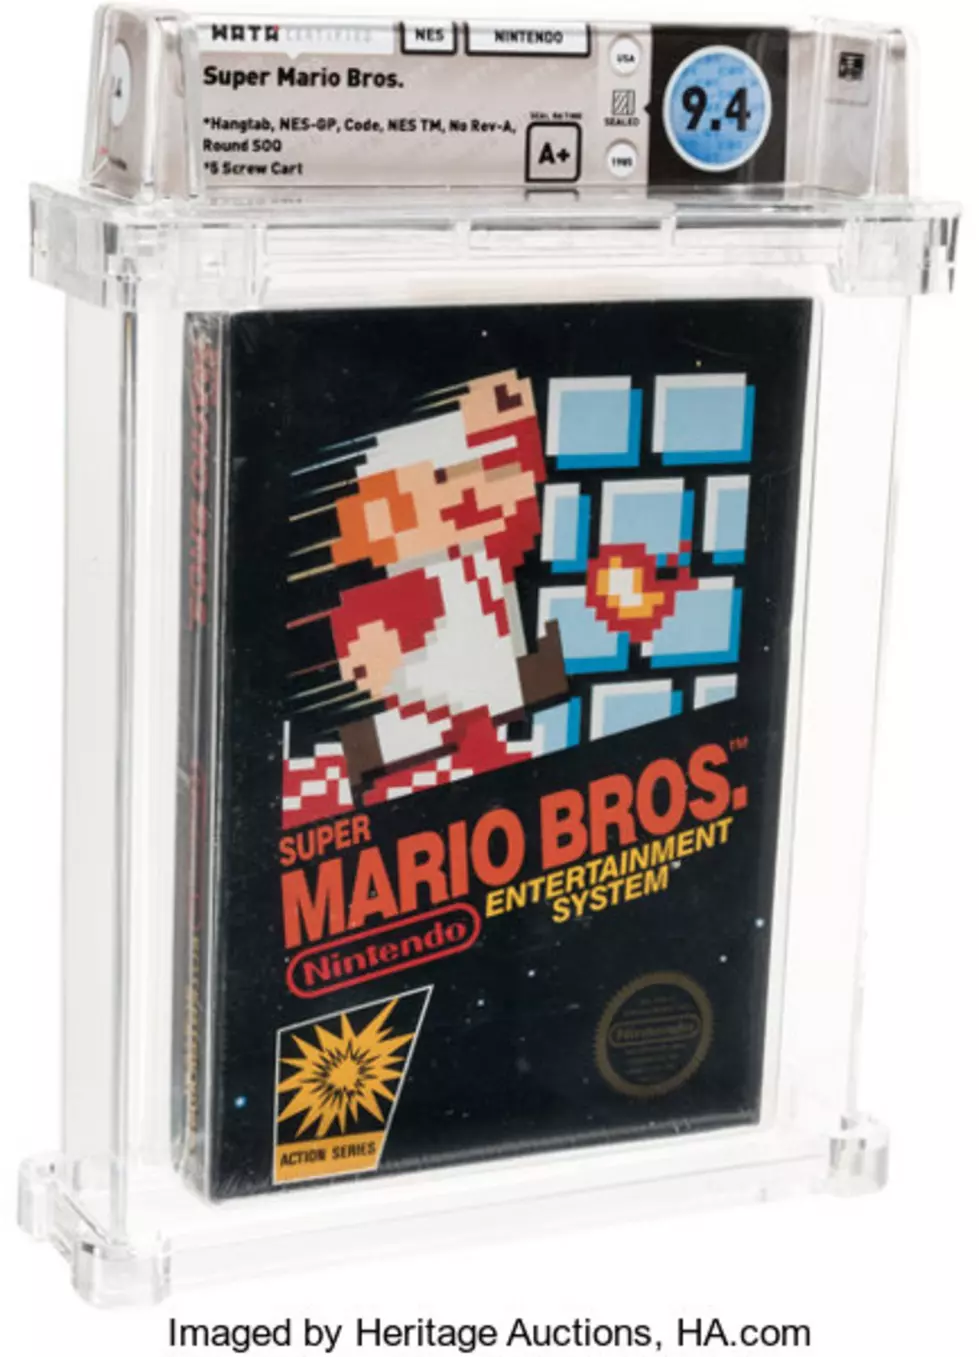 Original ‘Super Mario Bros’ Game Sold For $114,000 At Auction